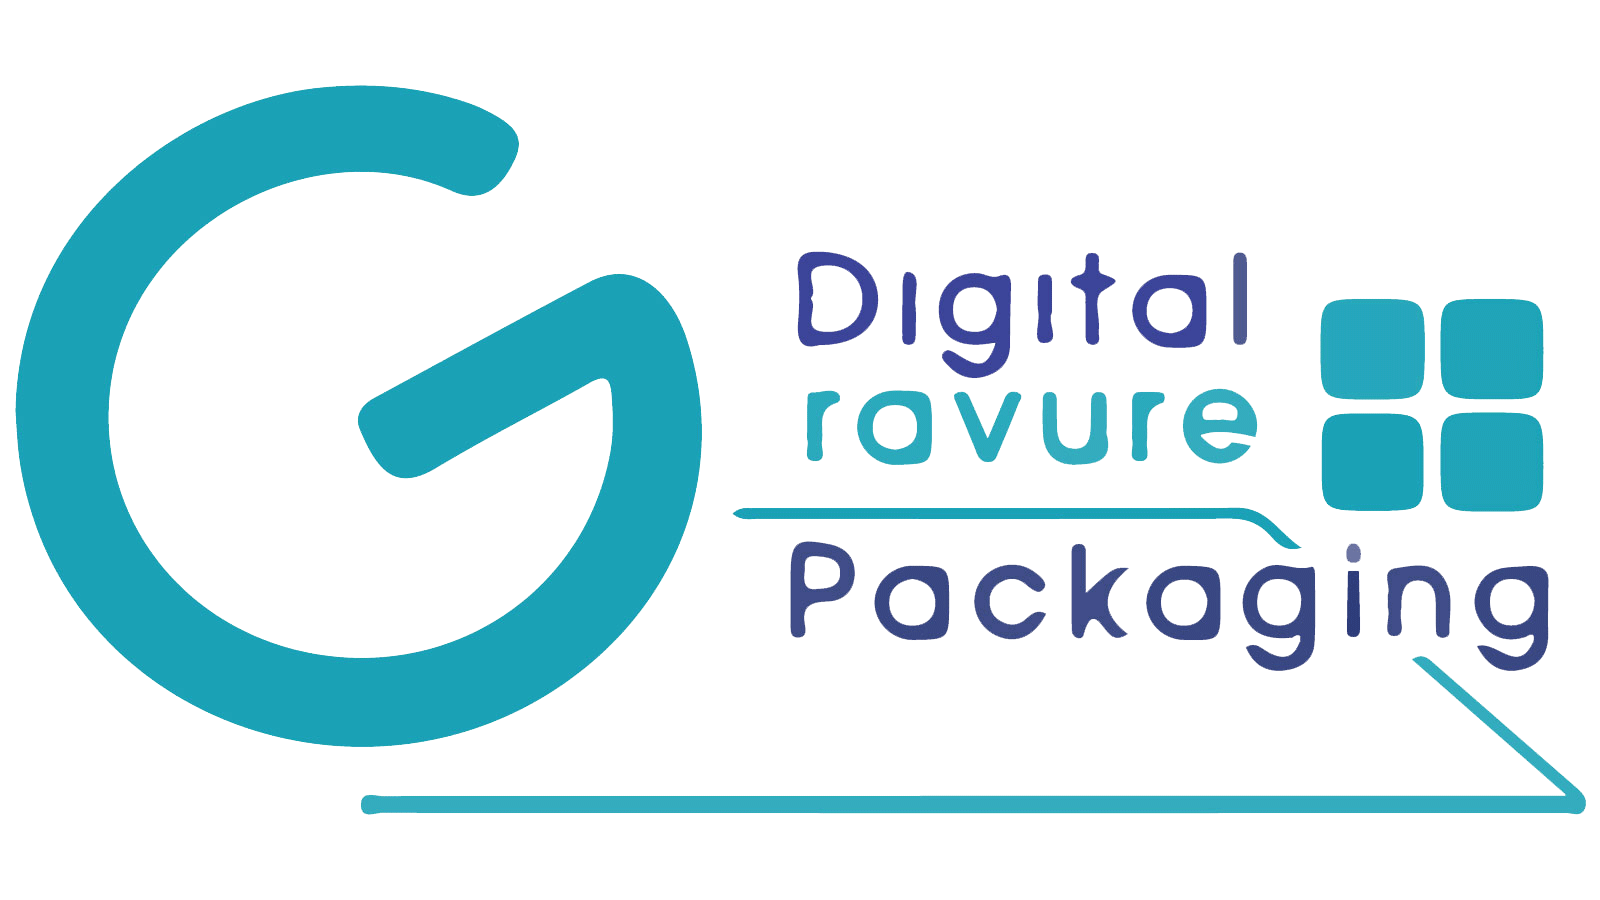 digital gravure packaging